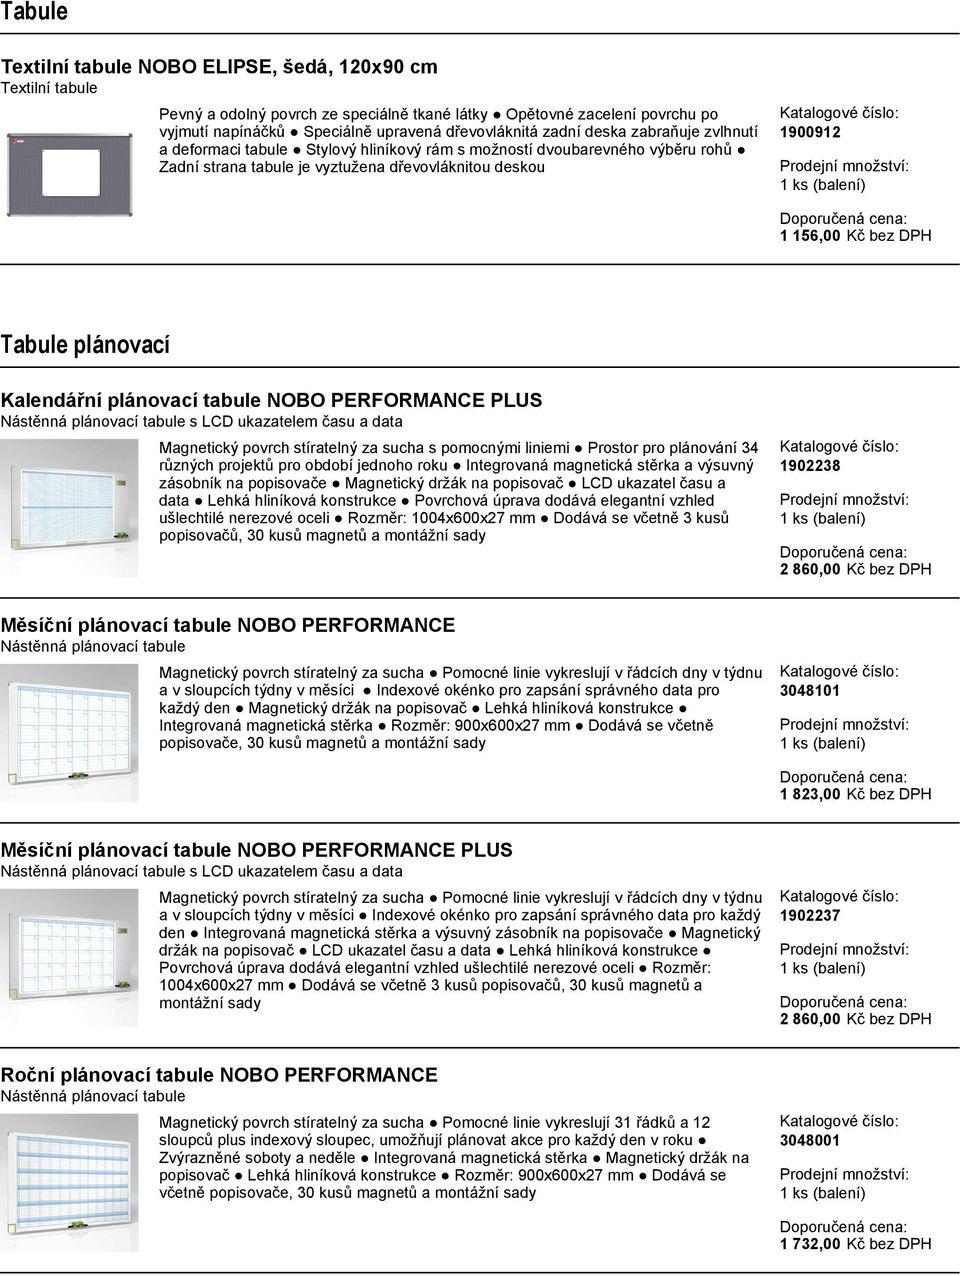 plánovací Kalendářní plánovací tabule NOBO PERFORMANCE PLUS Nástěnná plánovací tabule s LCD ukazatelem času a data Magnetický povrch stíratelný za sucha s pomocnými liniemi Prostor pro plánování 34